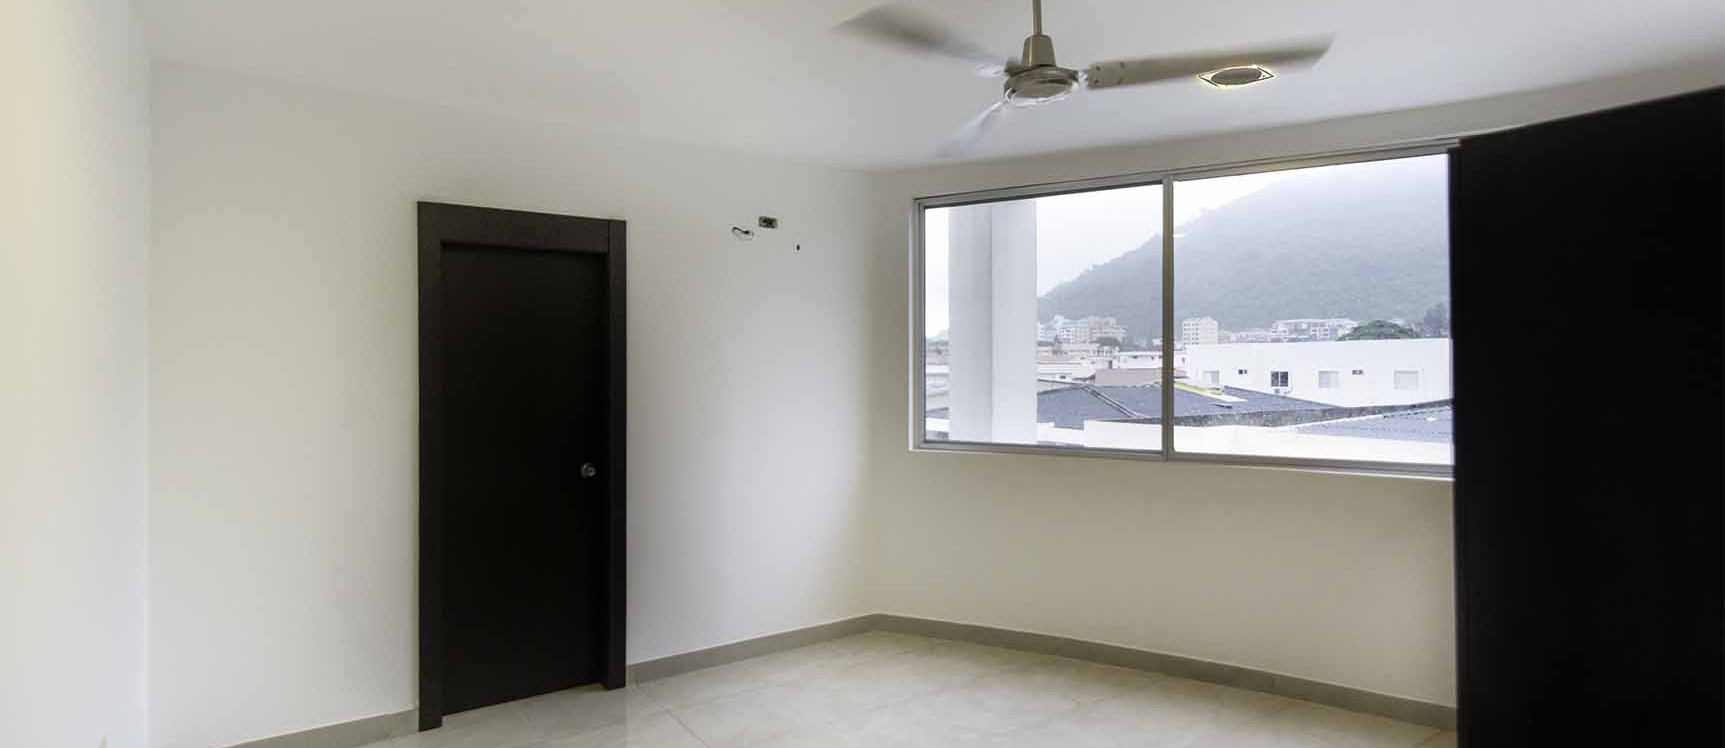 GeoBienes - Departamento en Venta en Santa Cecilia, Ceibos - Plusvalia Guayaquil Casas de venta y alquiler Inmobiliaria Ecuador